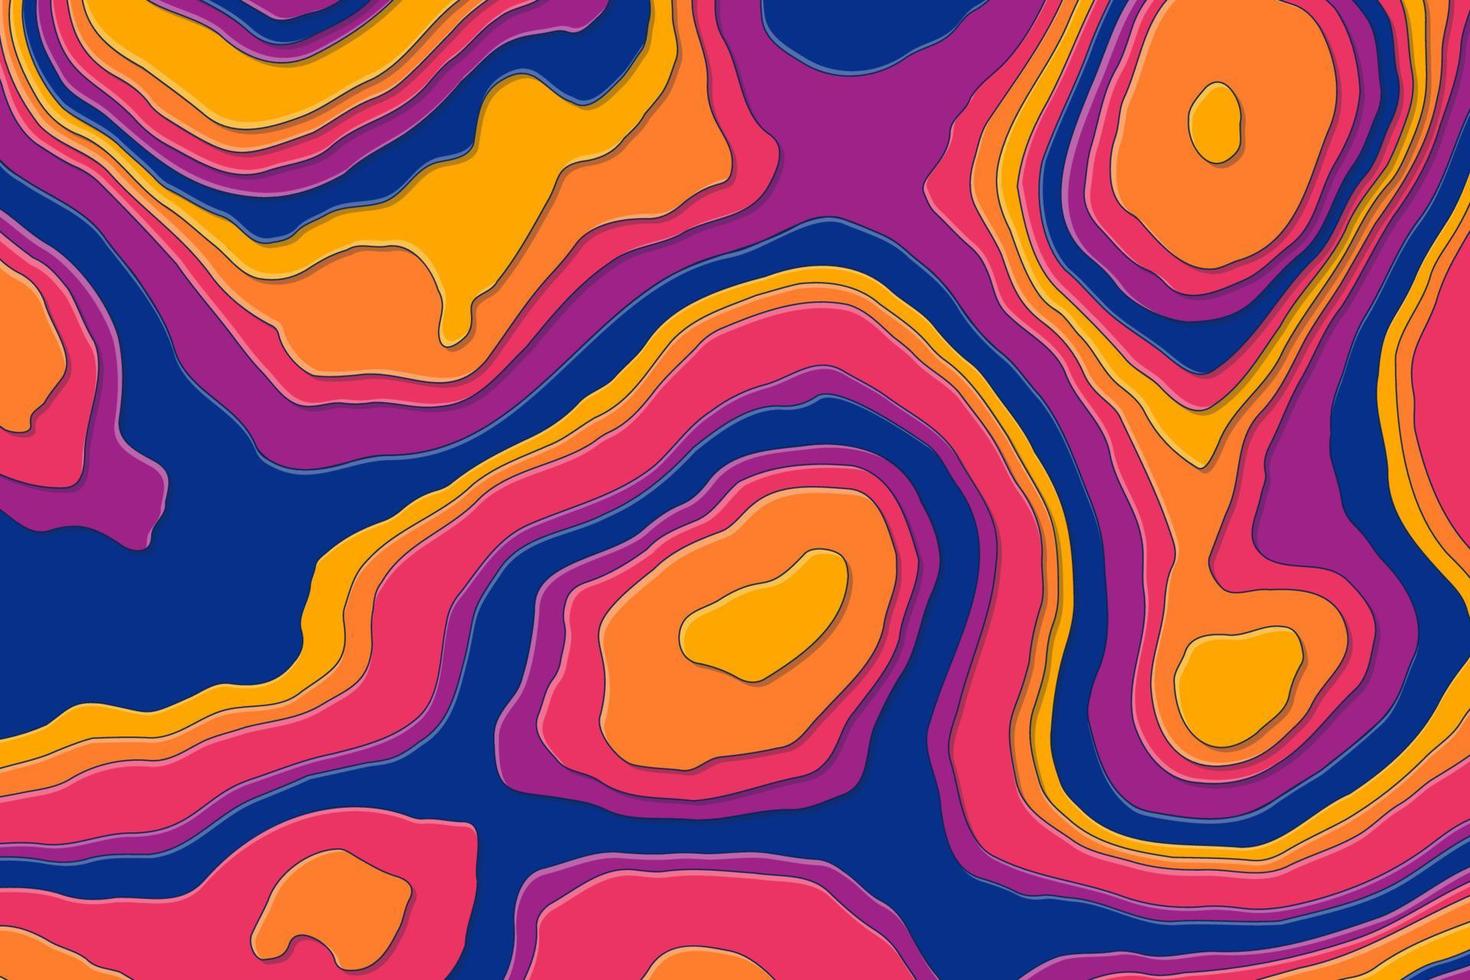 ondas de corte de origami abstracto con sombras planas y contornos. diseño colorido de la vista superior del fondo del mapa topográfico vector